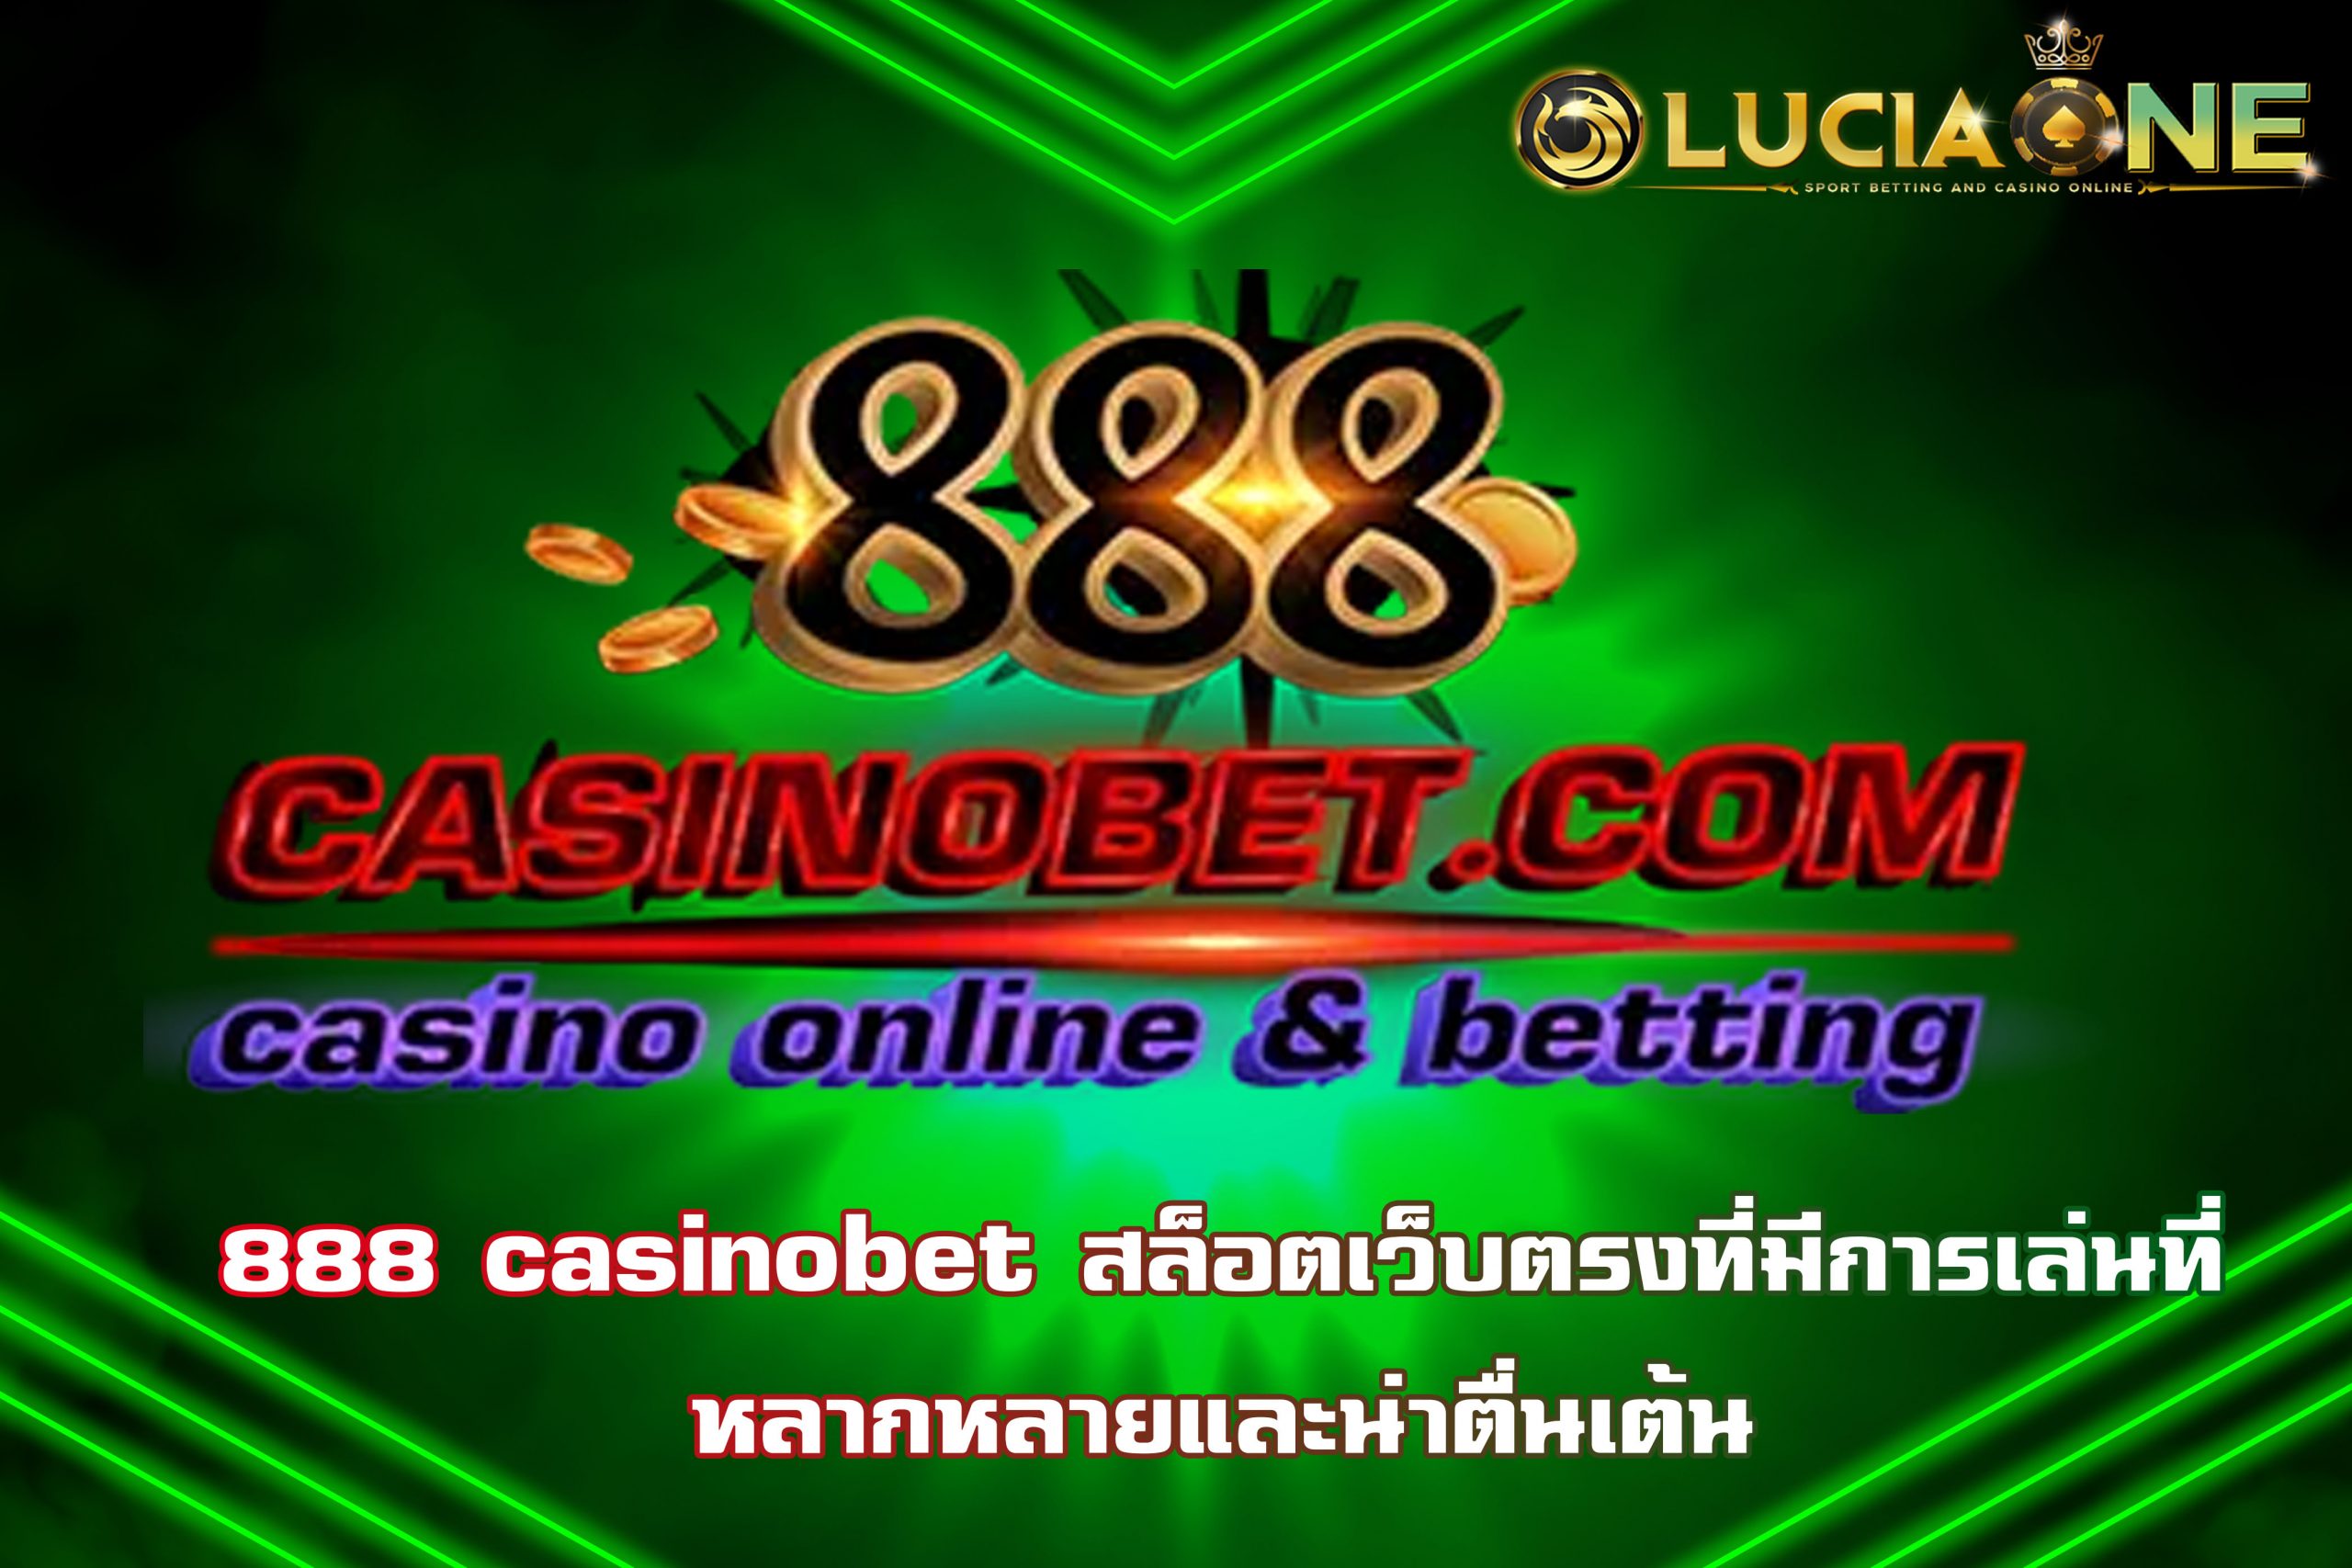 888 casinobet สล็อตเว็บตรงที่มีการเล่นที่หลากหลายและน่าตื่นเต้น